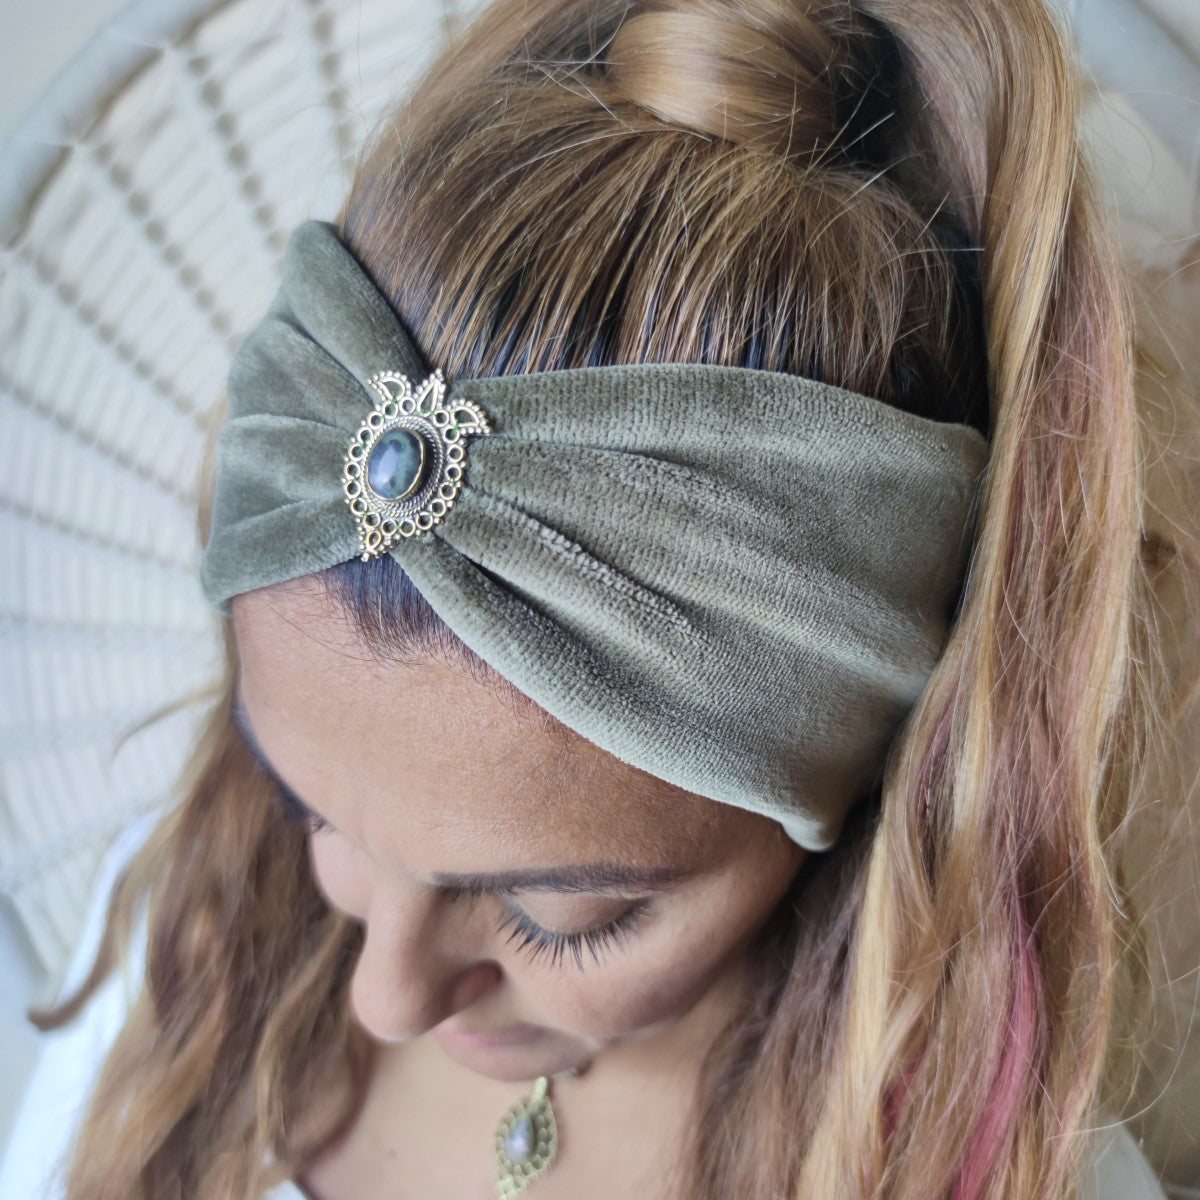 Nature Love Haarband in Khaki aus Samt - mit Edelsteinen verziert